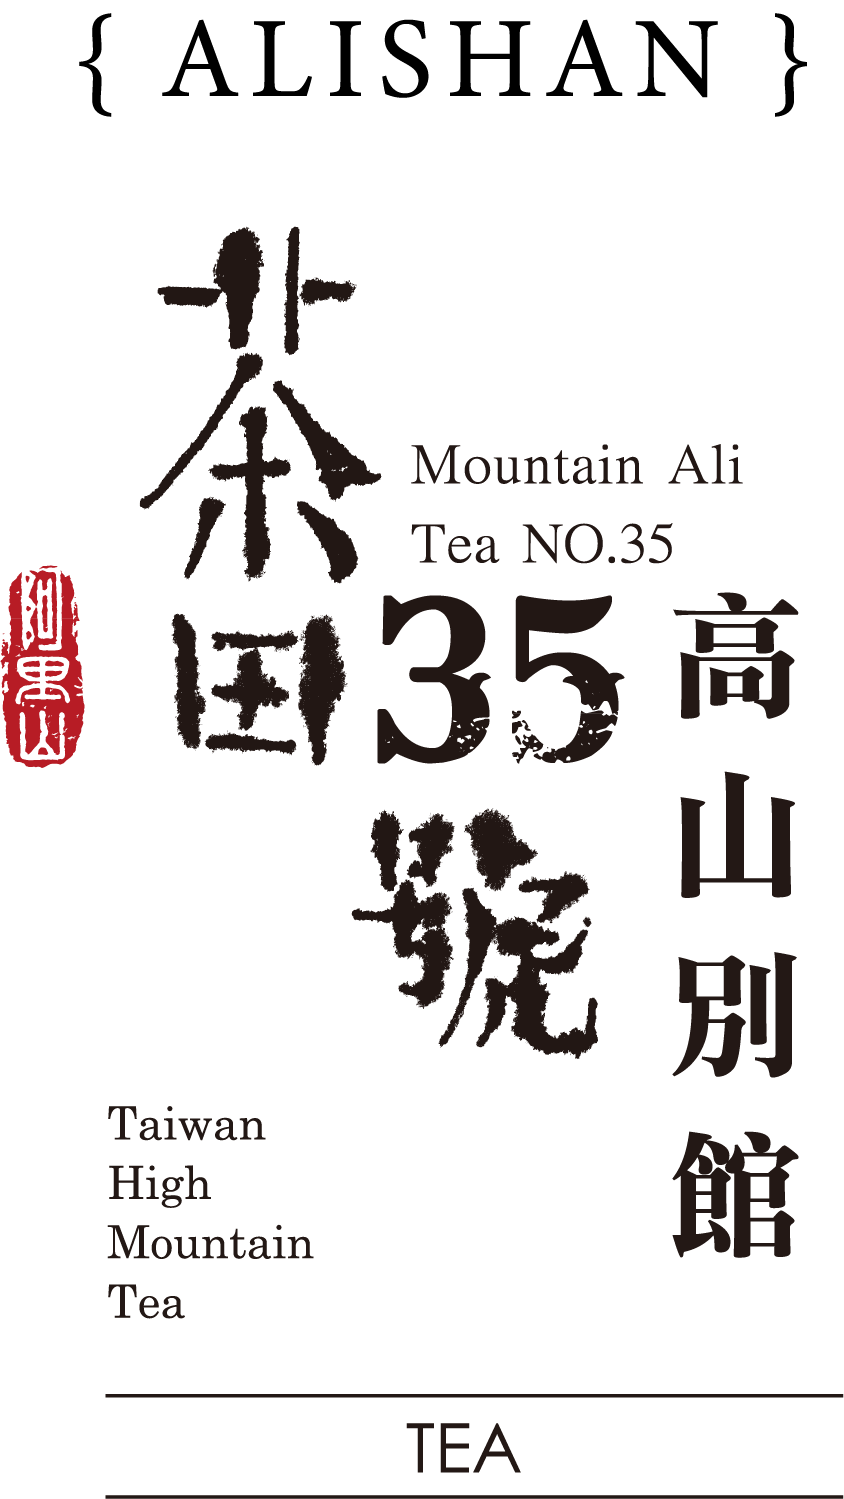 茶田35號 高山植物園 logo 標誌